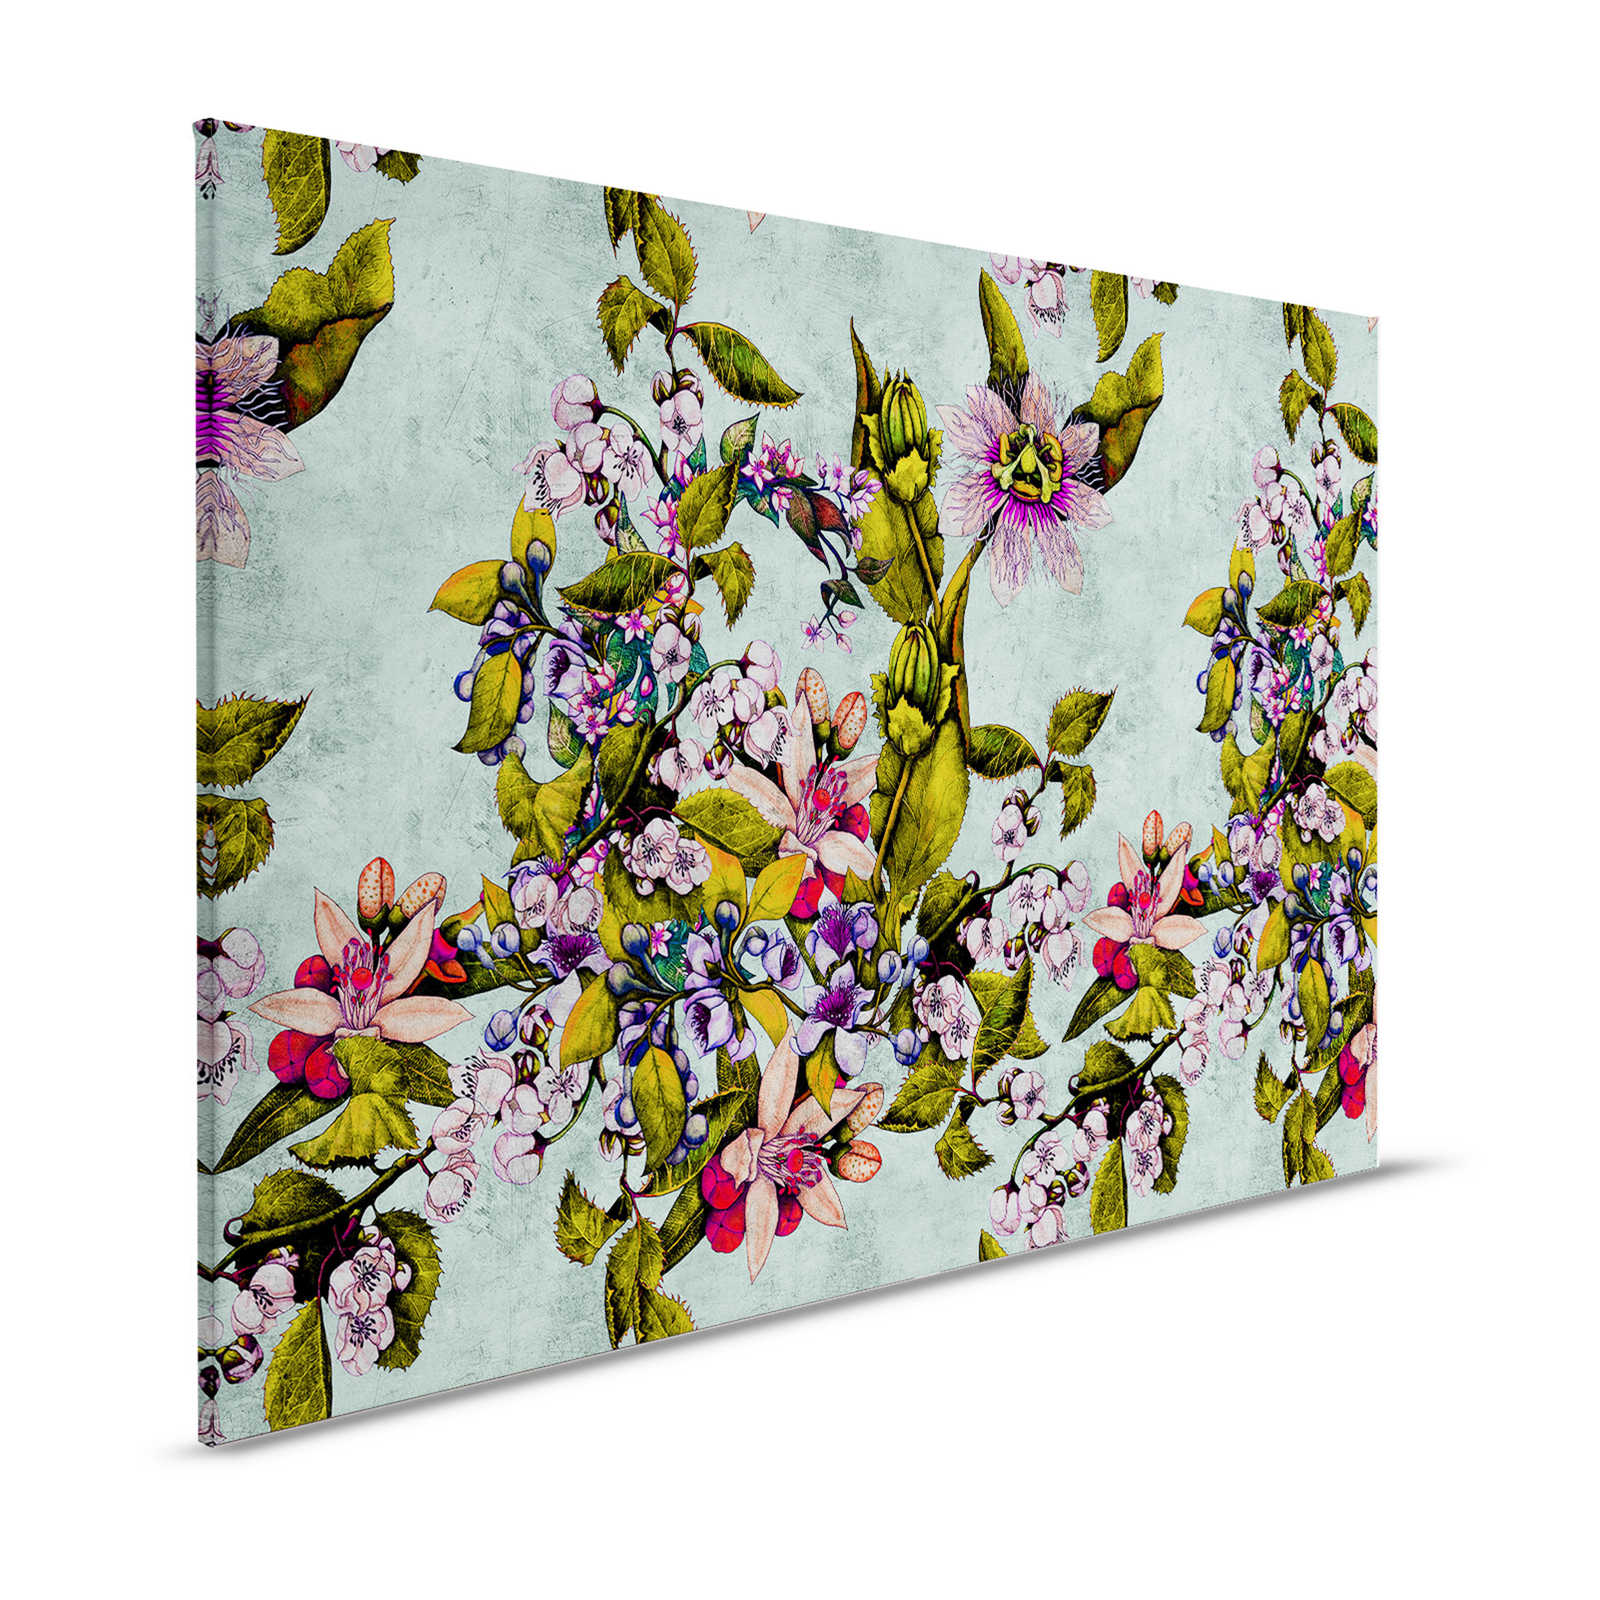 Tropical Passion 2 - Leinwandbild mit Blüten und Knospen – 1,20 m x 0,80 m
